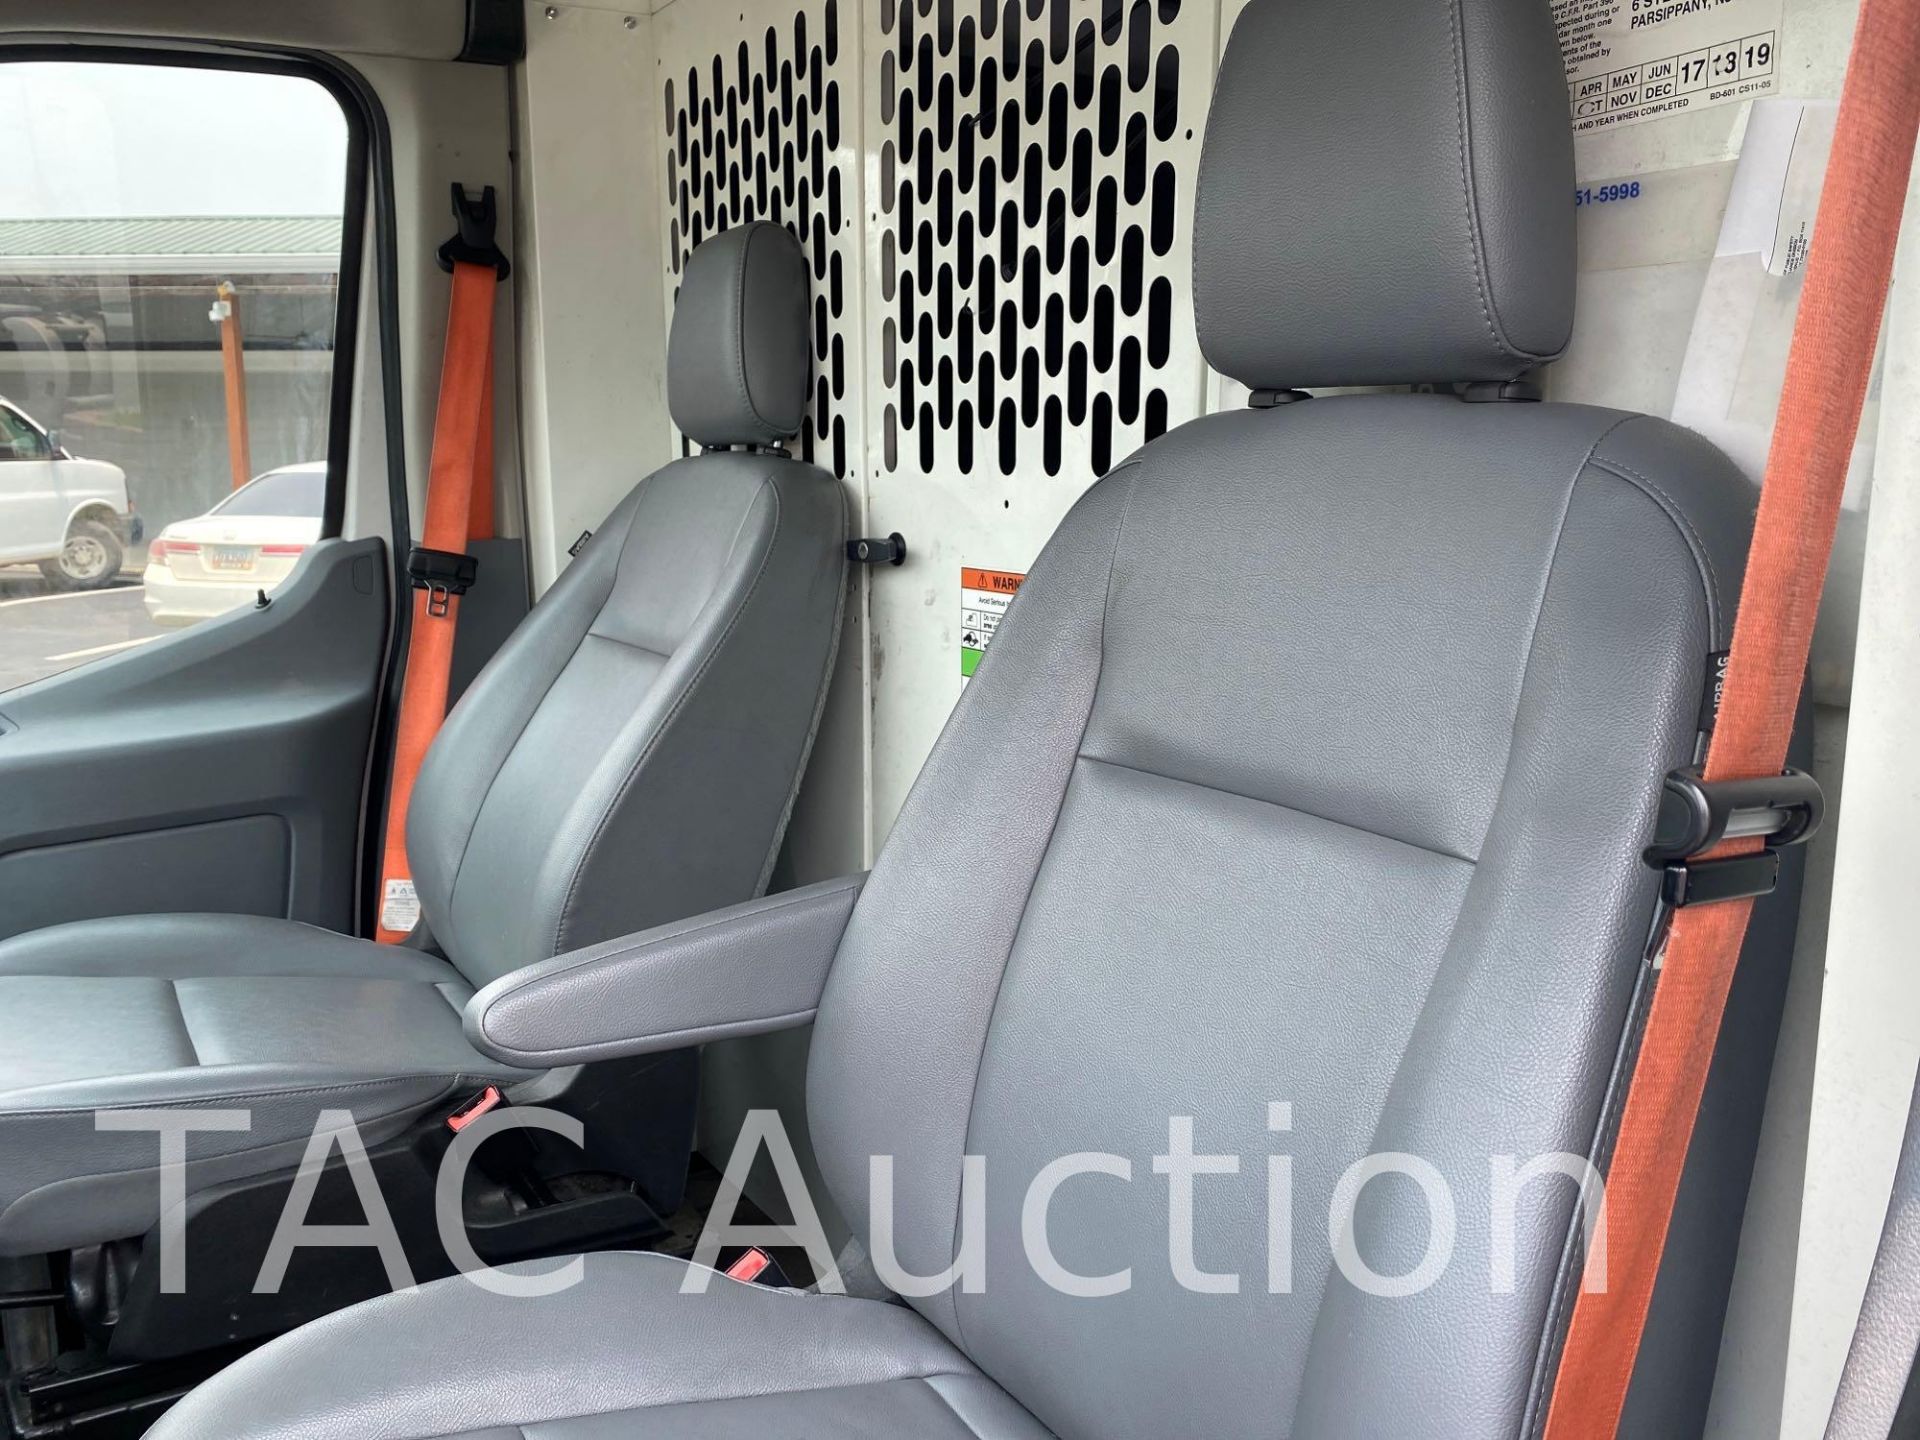 2018 Ford Transit 150 Cargo Van - Image 11 of 46